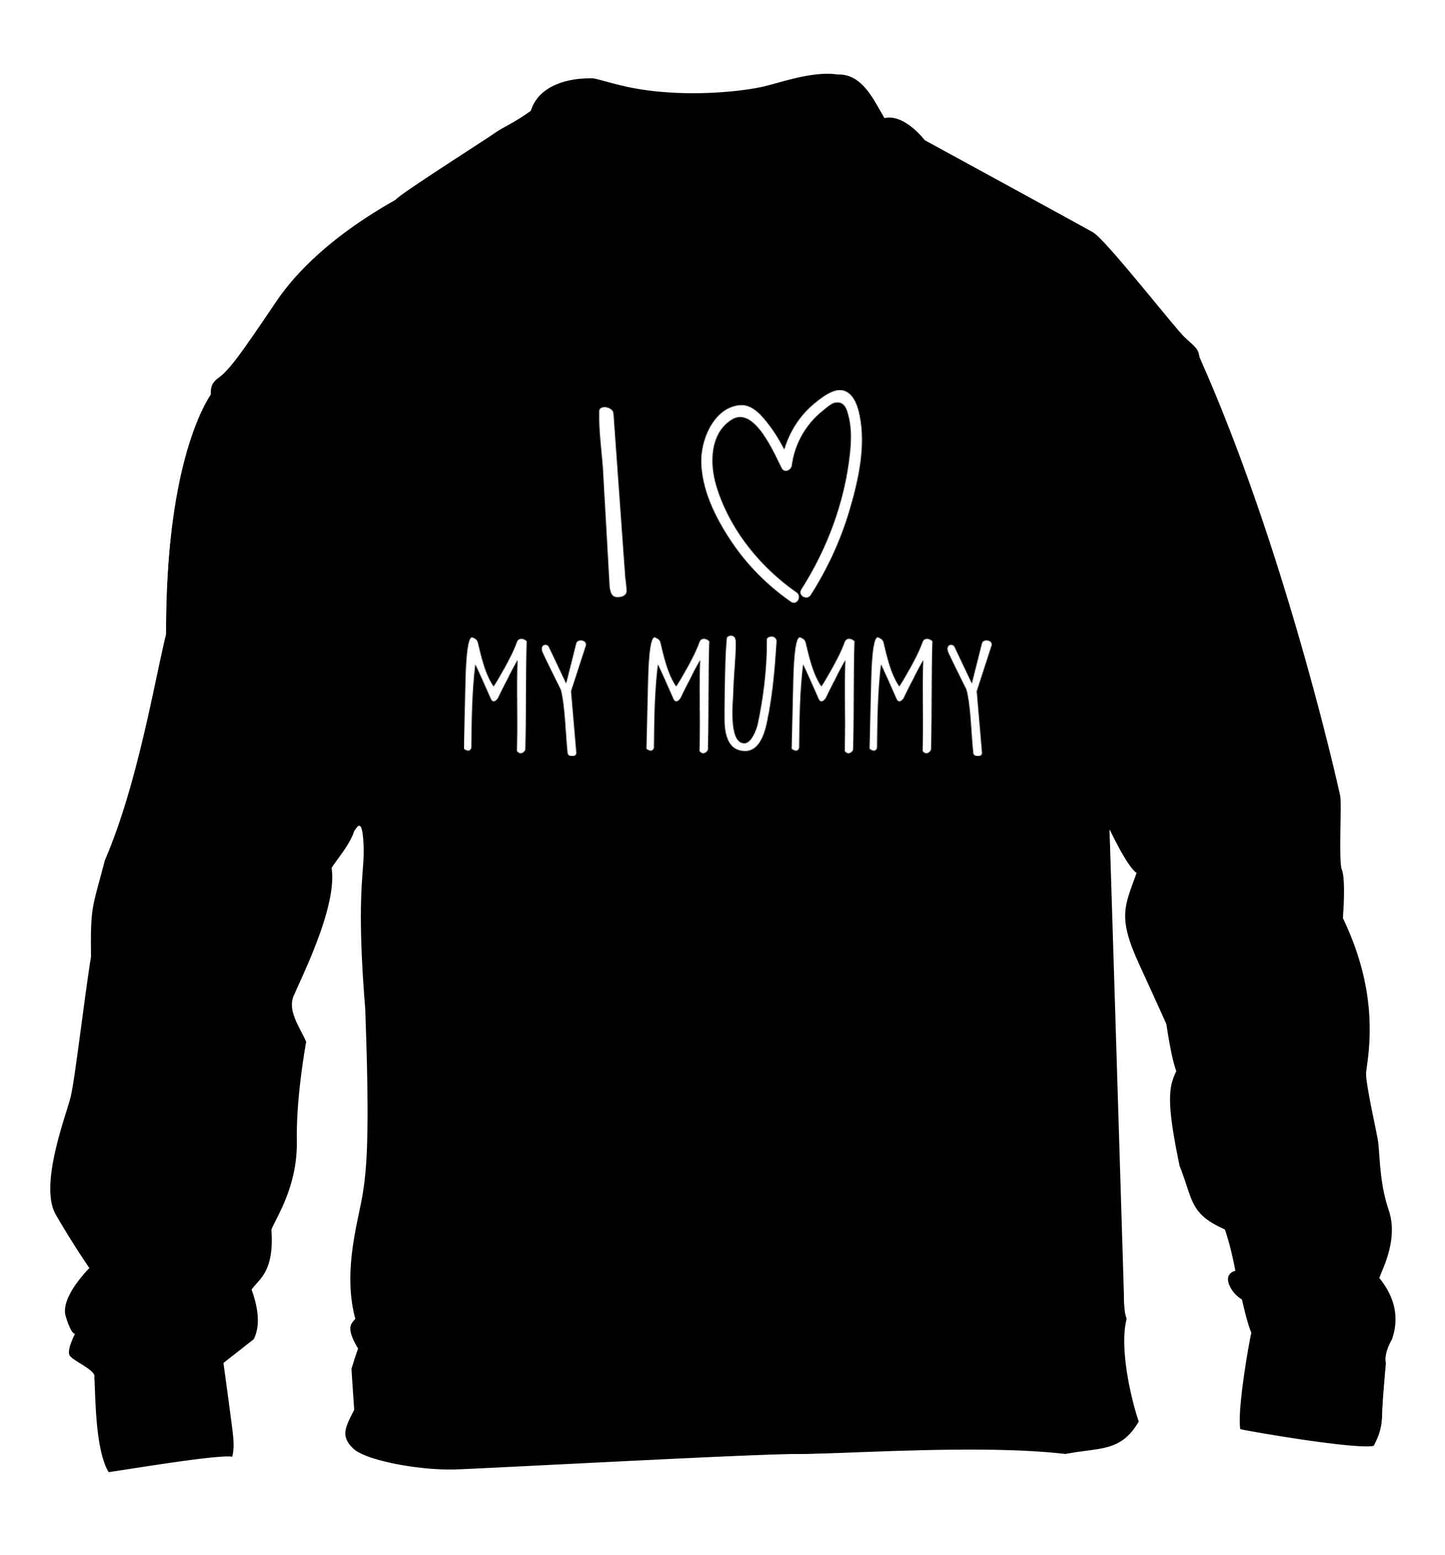 I love my mummy children's black sweater 12-13 Years